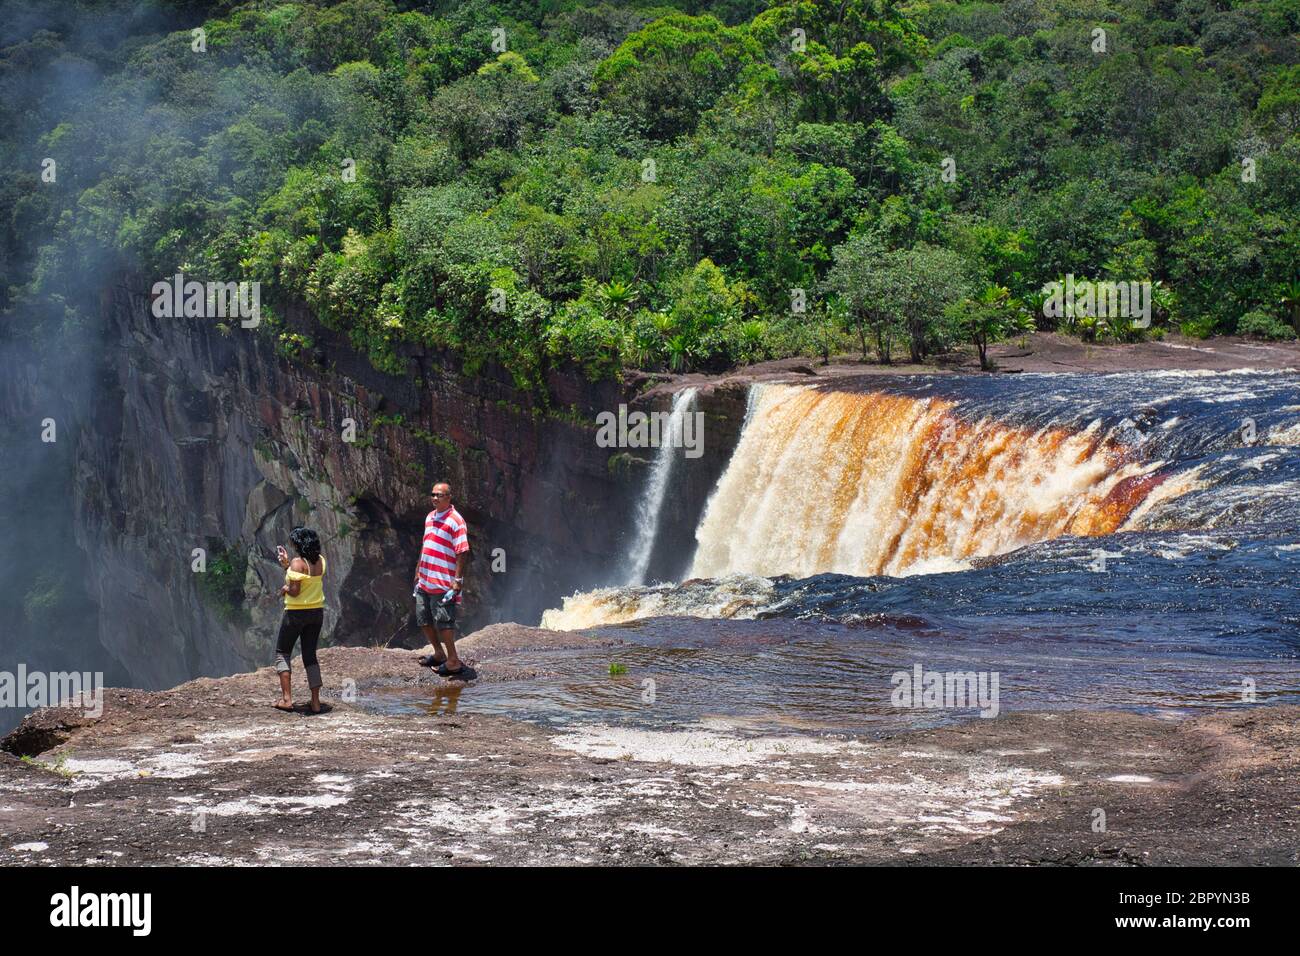 Cascate di Kieteur, nel Parco Nazionale di Kieteur, nella regione di Potaro-Siparuni, Guyana e parte della foresta pluviale amazzonica. Una coppia pagaia vicino alle cascate Foto Stock